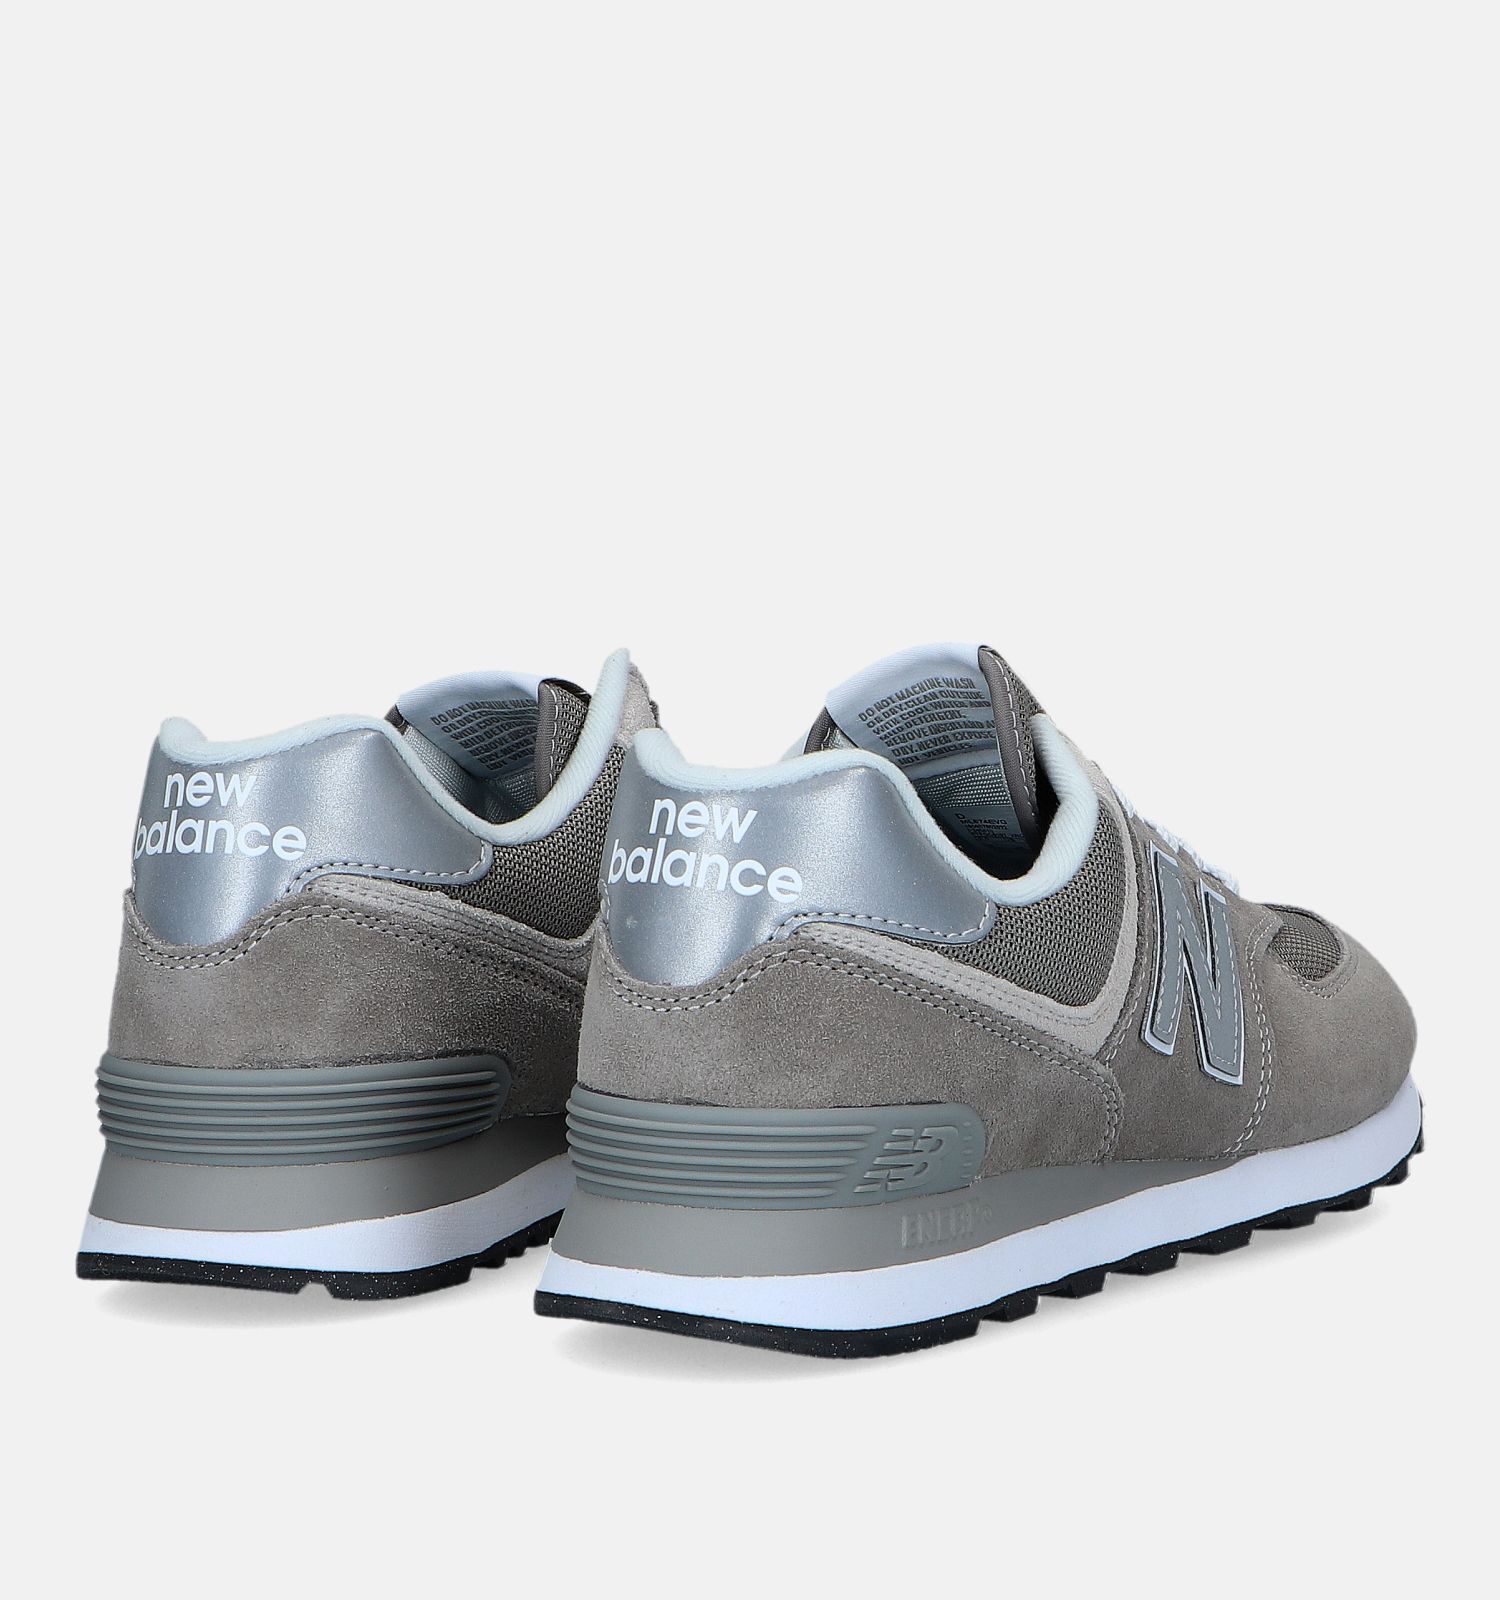 Sneakers grijs